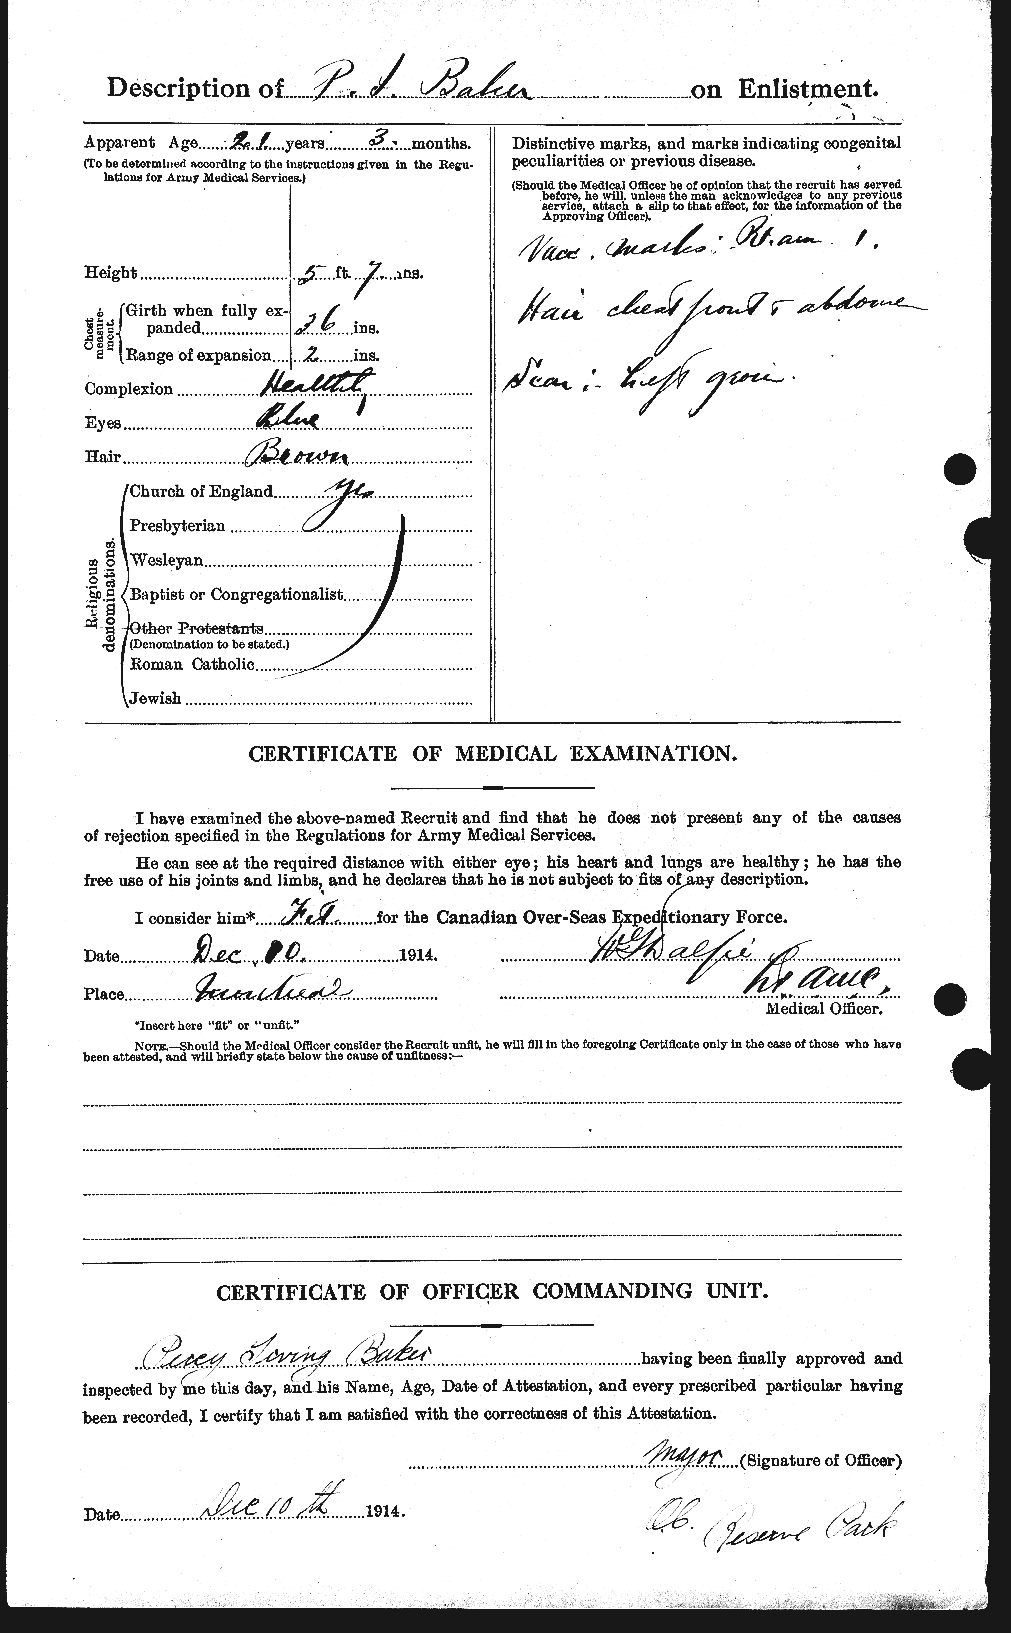 Dossiers du Personnel de la Première Guerre mondiale - CEC 222261b